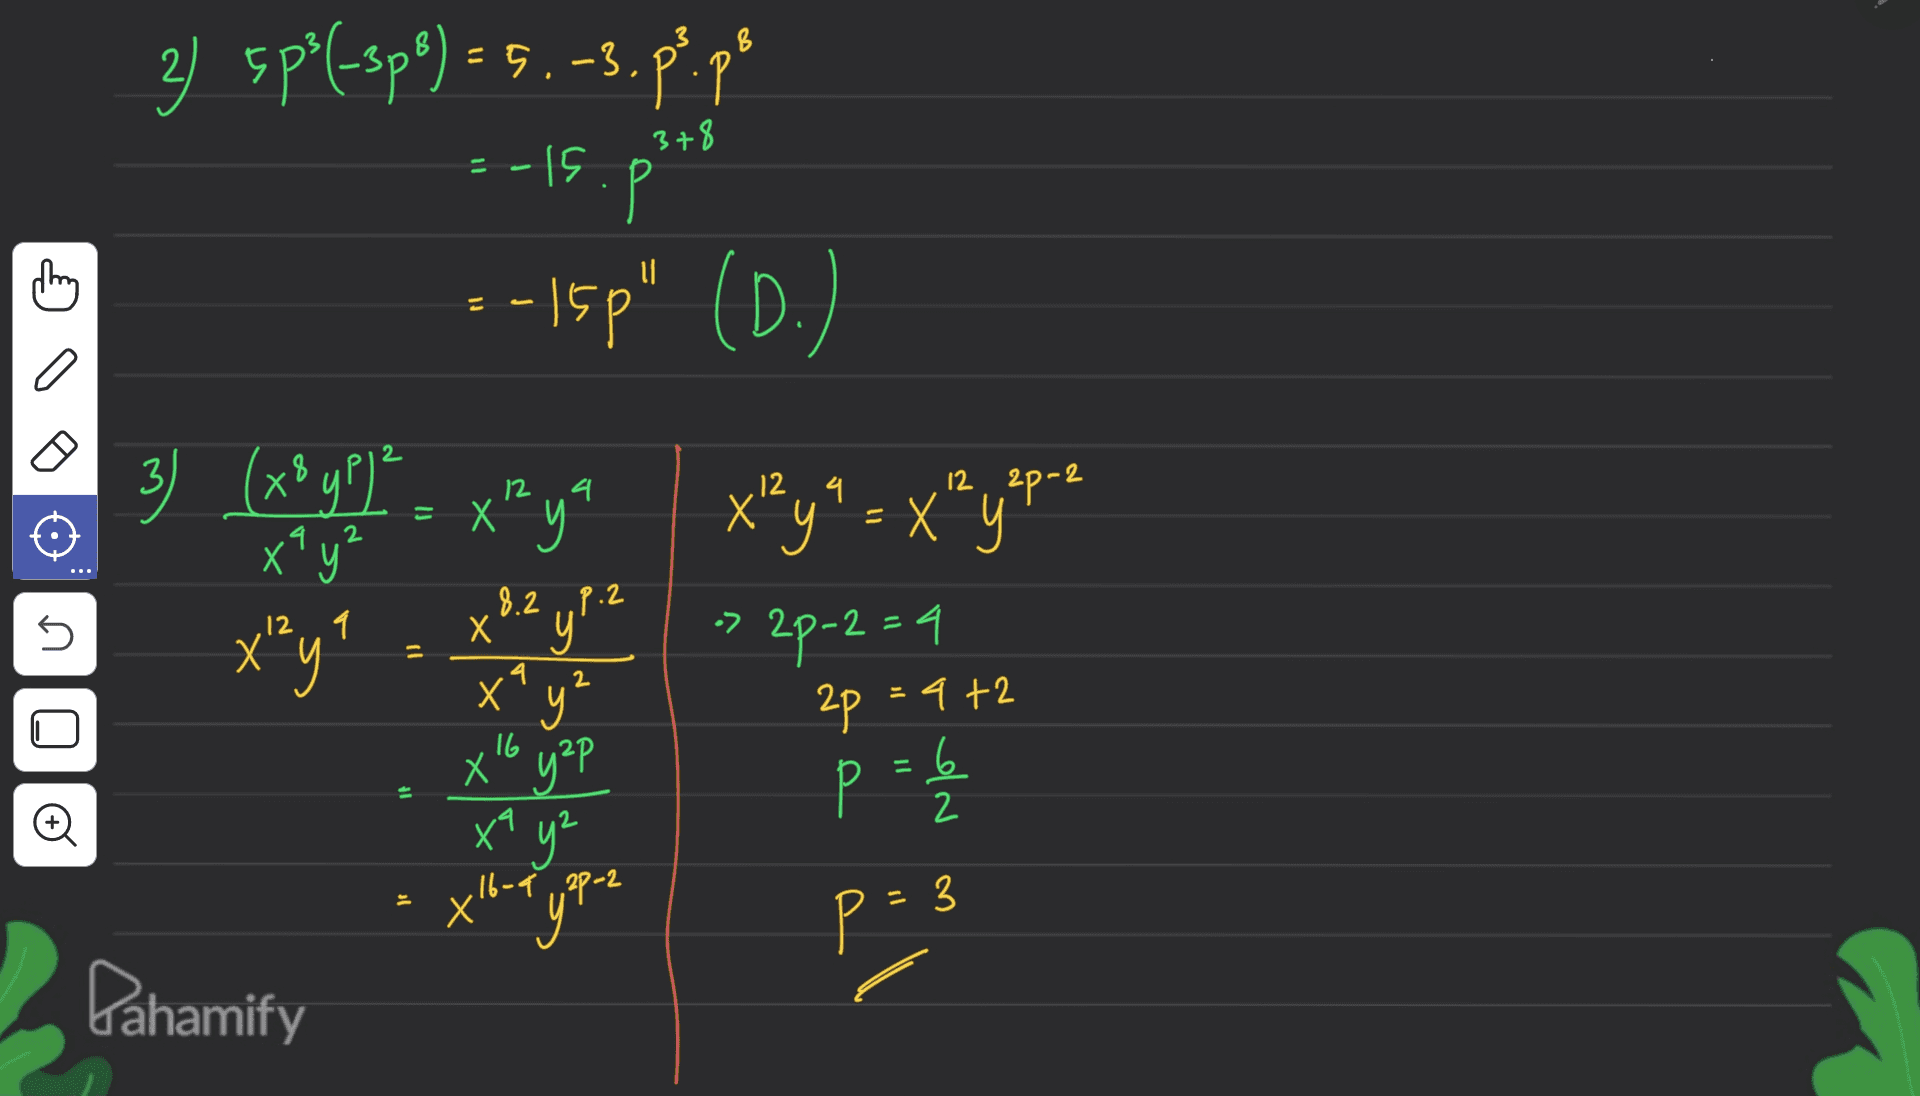 378 11 3) 5p?f-spe) = 5.-3.p?po Р ---15p" (D.) - 15 = 4 2 3) (x8 pp 1² 3 ? xay? X'y x^ya x²y* = X² yepre 2p-2 8.2 p.2 5 X y • -2=4 = 4 2 ху 16 2p = 4+2 = 6 2 o X х“ у°Р х1 у” " ,16-9 , 2P-2 3 p= Dahamify 